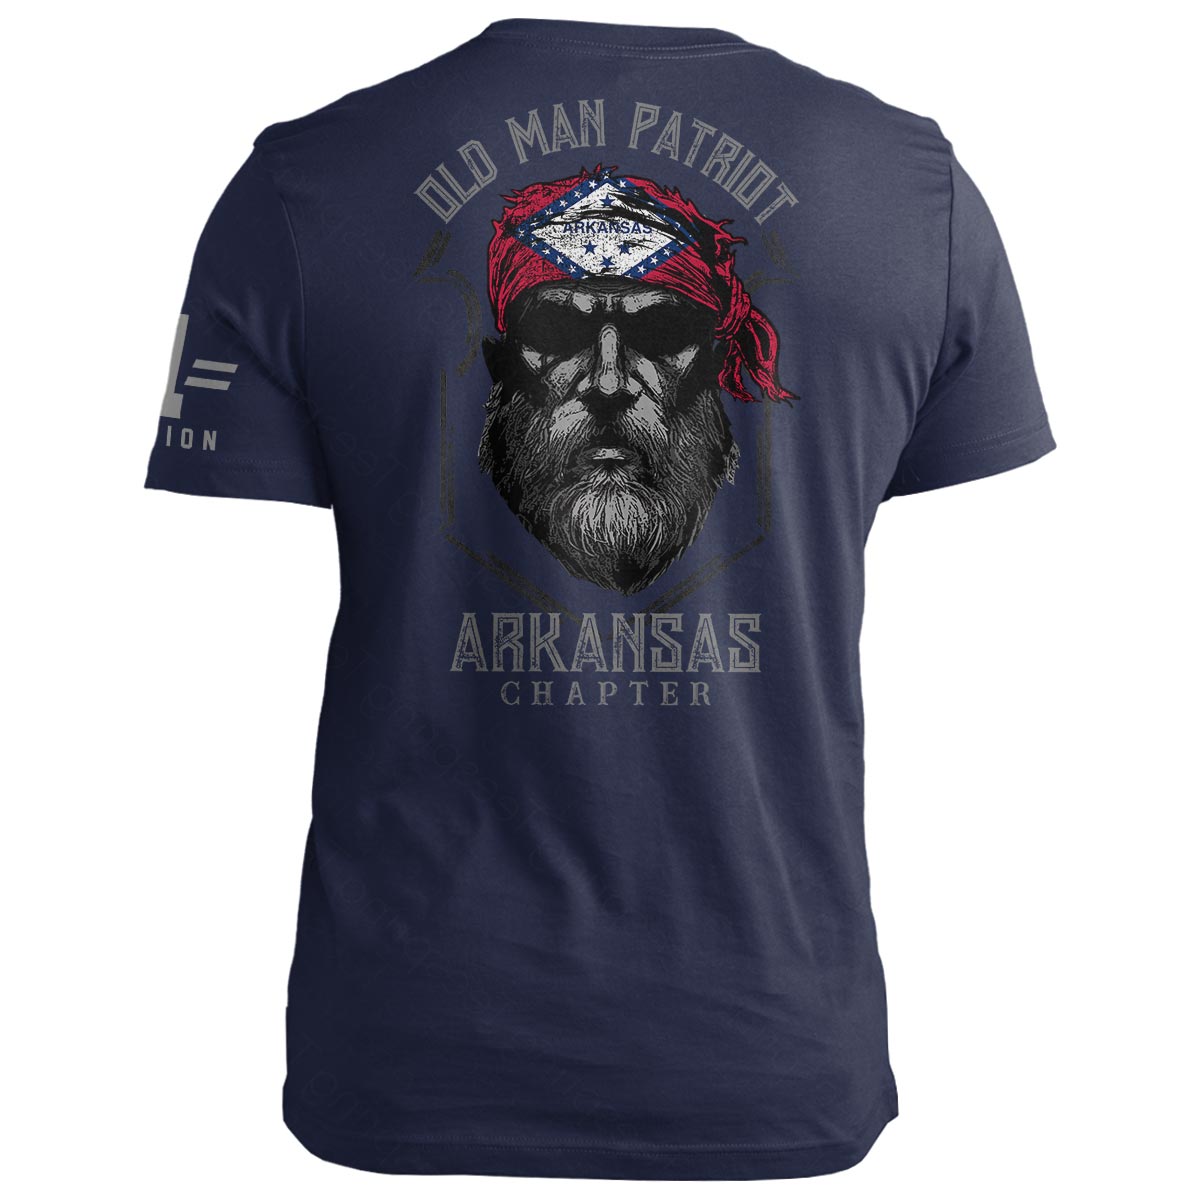 Arkansas Old Man Patriot